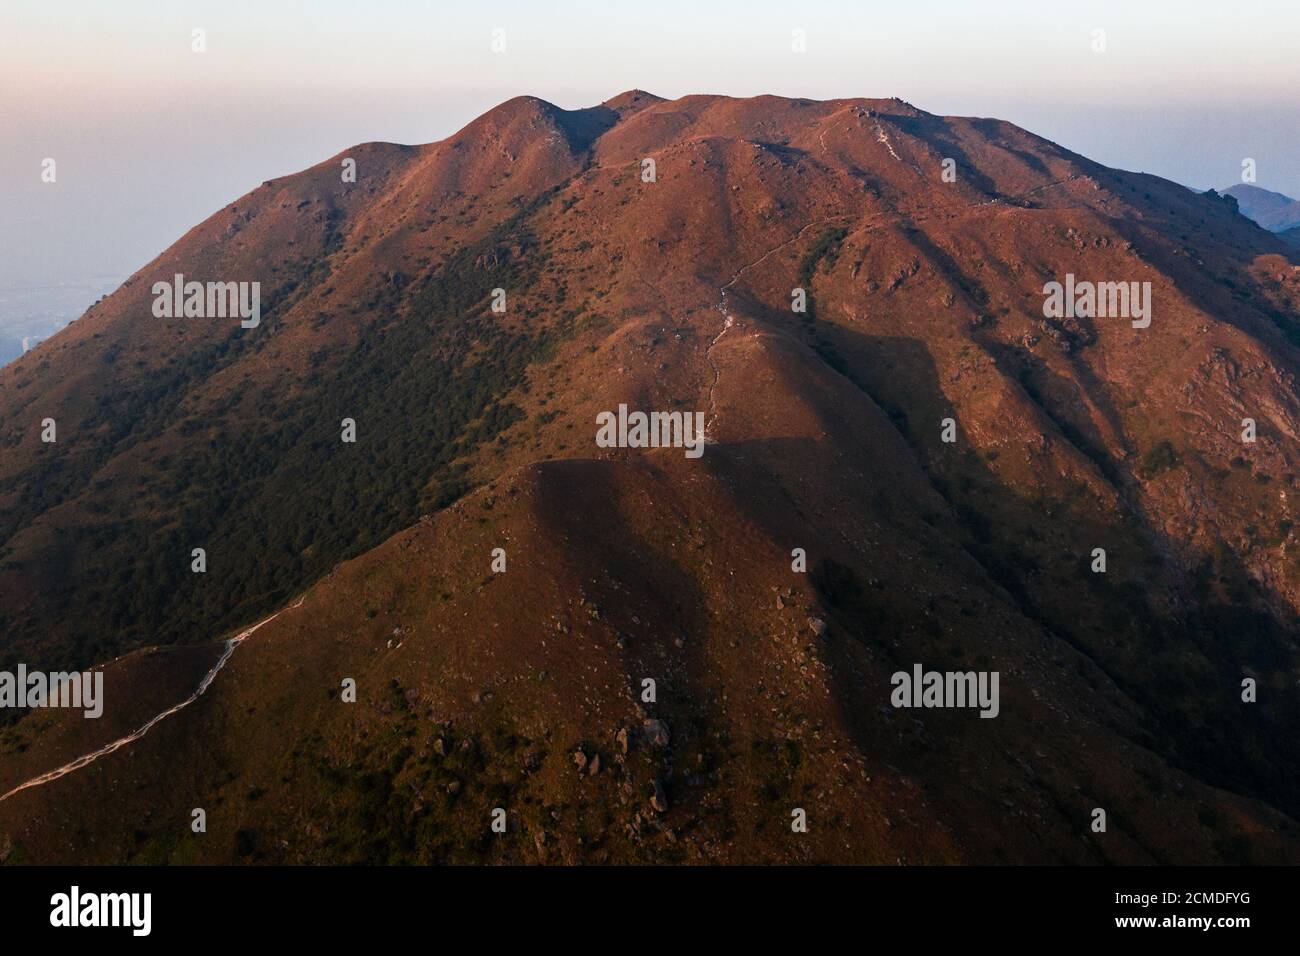 Horizontal shot of a mountain range, mountainscape scenery Stock Photo